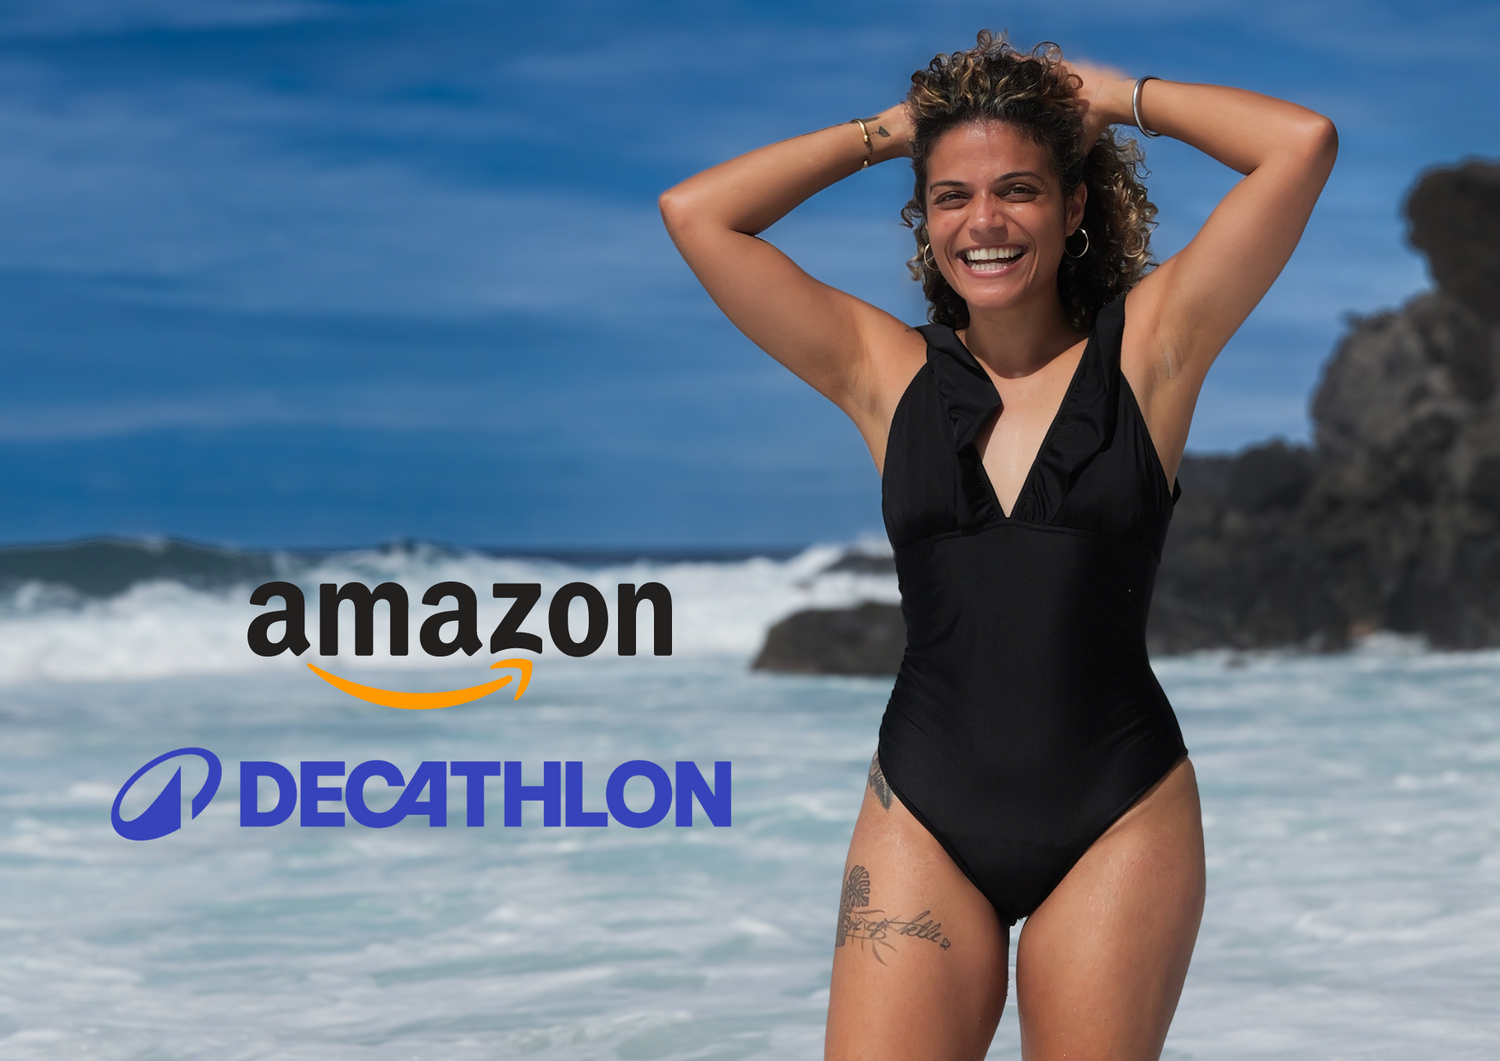 Sorio marque partenaire Décathlon Amazon